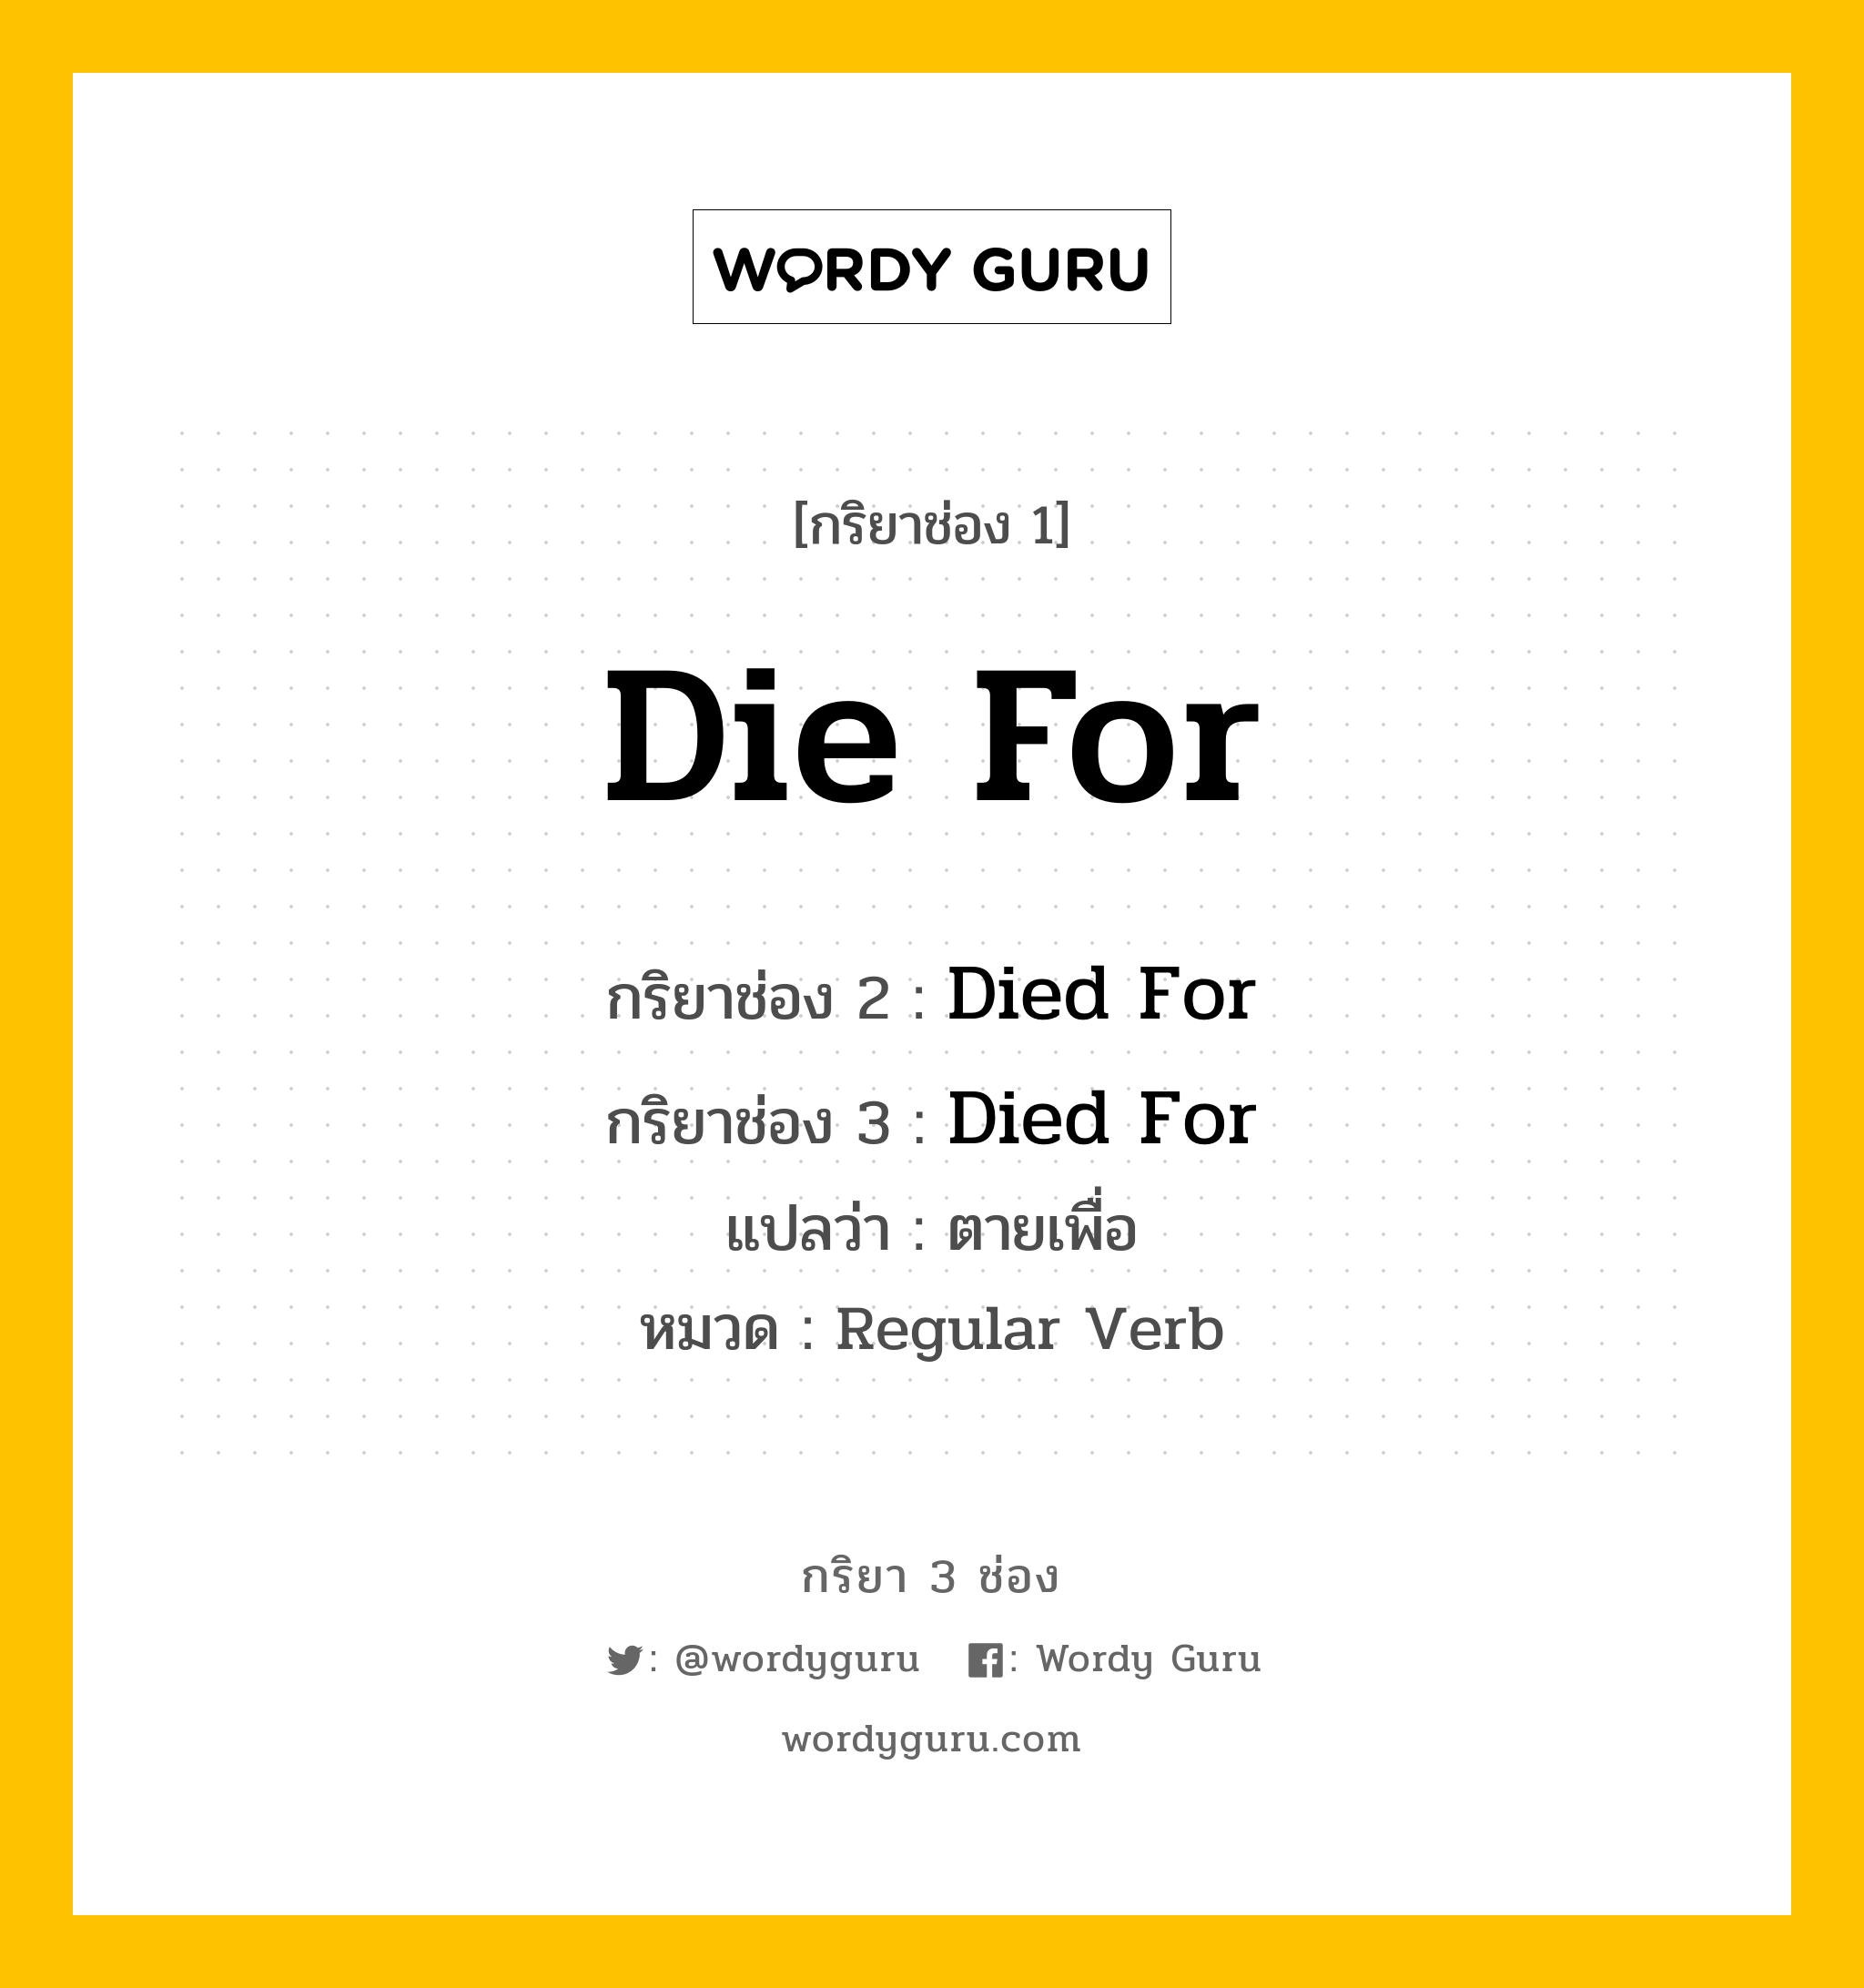 กริยา 3 ช่อง ของ Die For คืออะไร? มาดูคำอ่าน คำแปลกันเลย, กริยาช่อง 1 Die For กริยาช่อง 2 Died For กริยาช่อง 3 Died For แปลว่า ตายเพื่อ หมวด Regular Verb หมวด Regular Verb